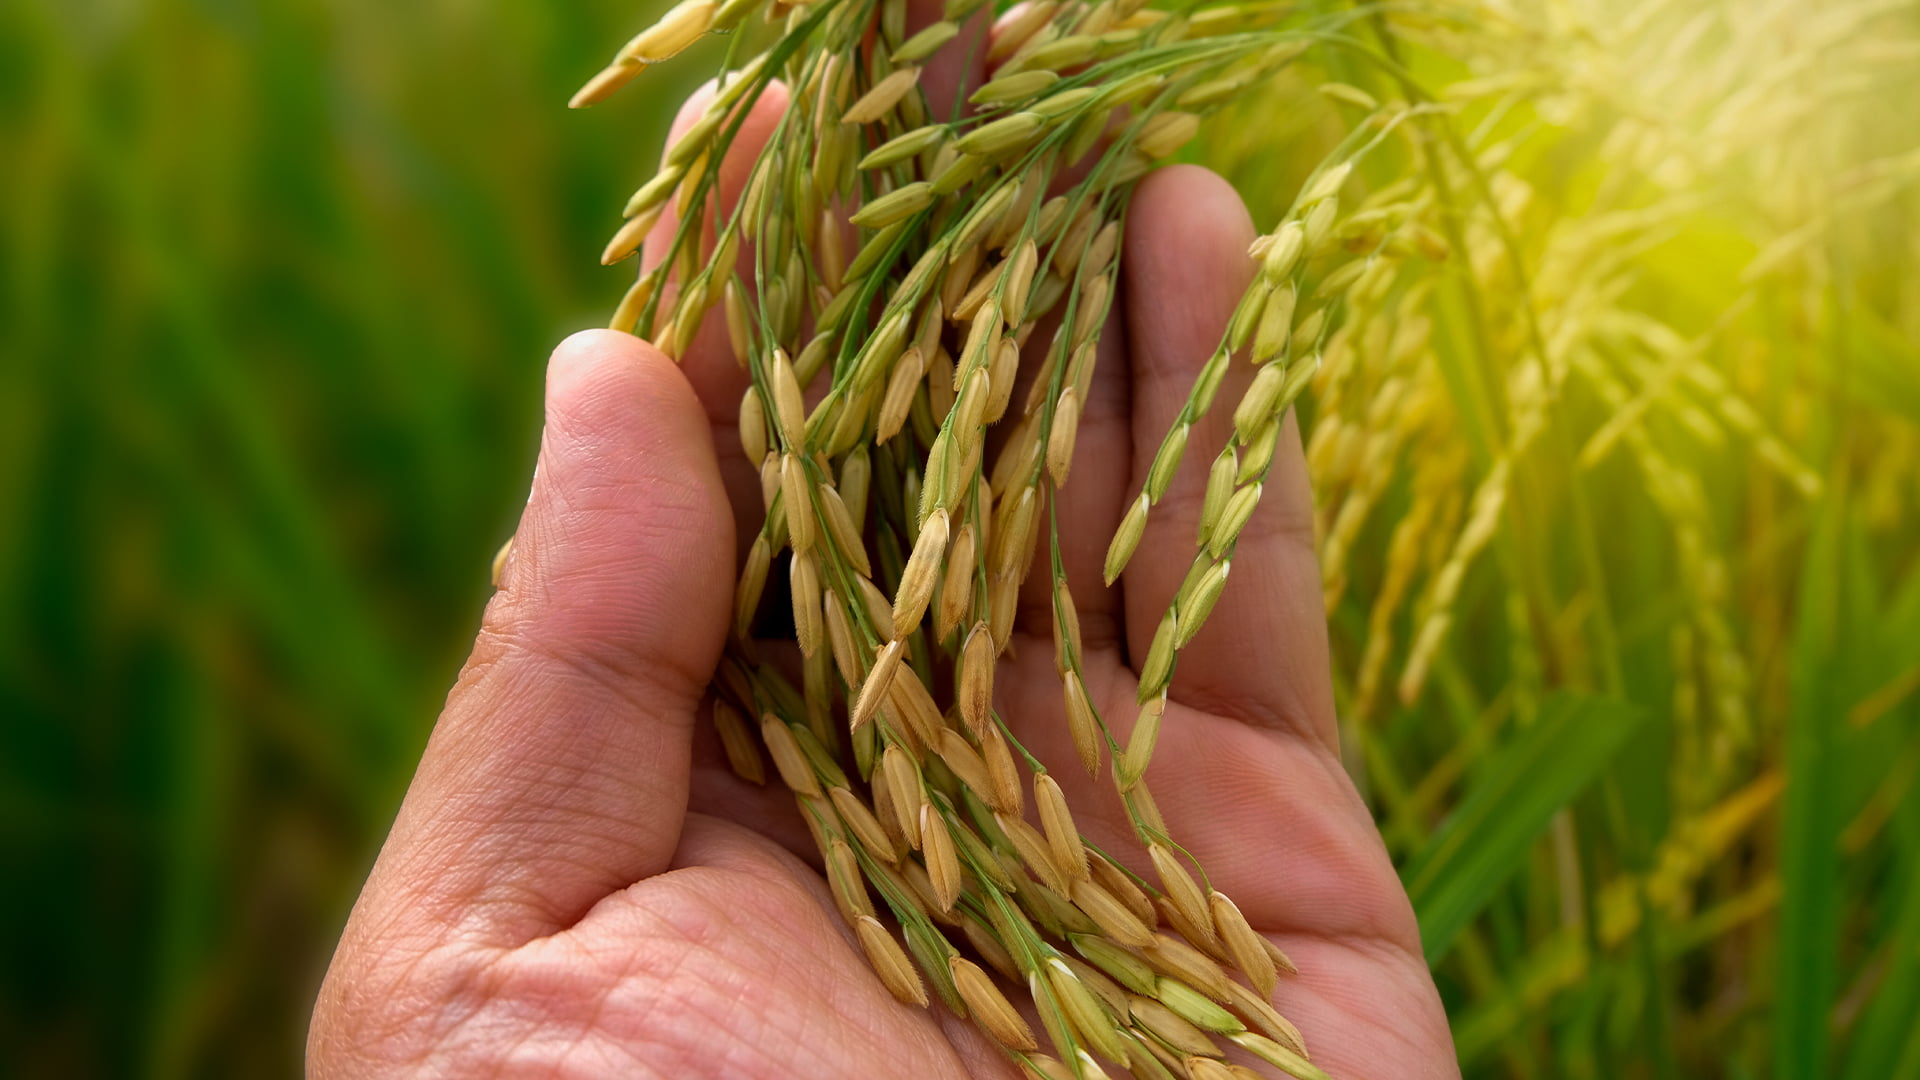 ECONOMIA: Brasil vai importar arroz para evitar especulação de preços